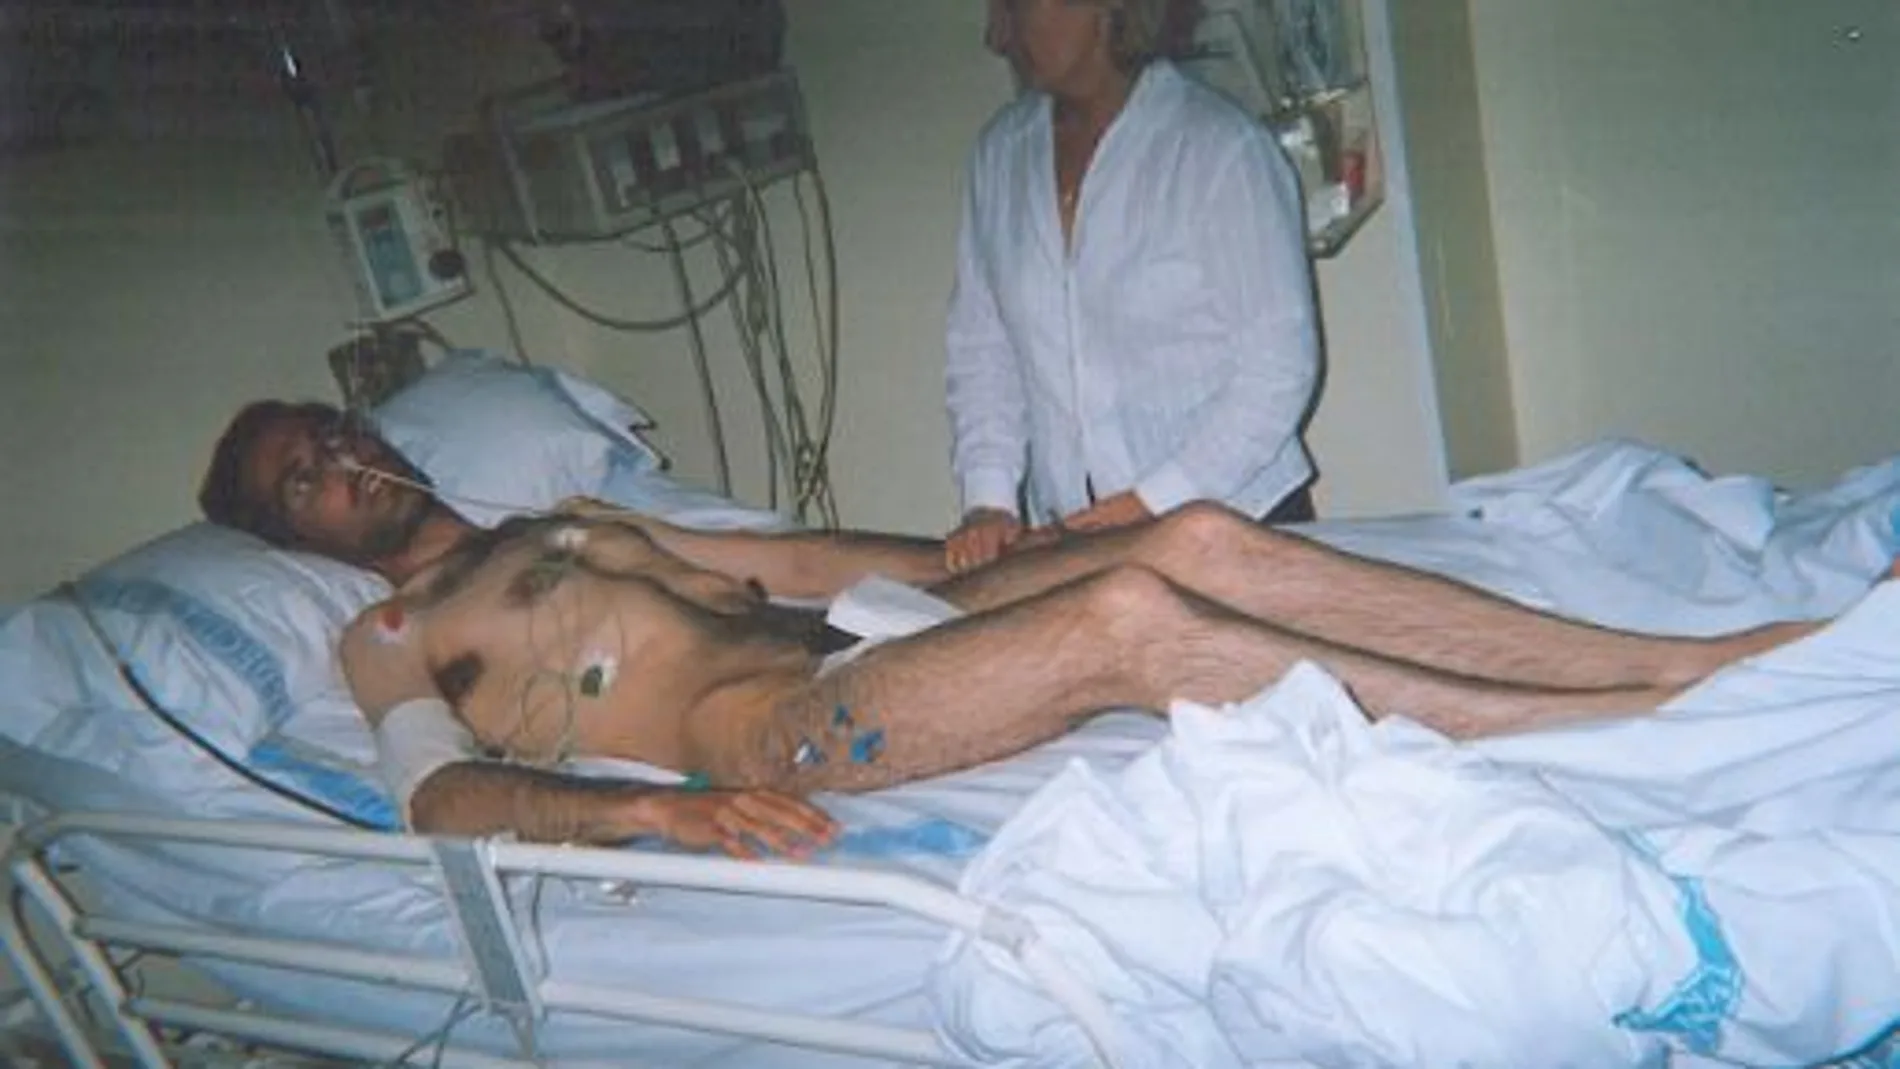 Villafañe estuvo en huelga de hambre durante 47 días y perdió más de 20 kilos